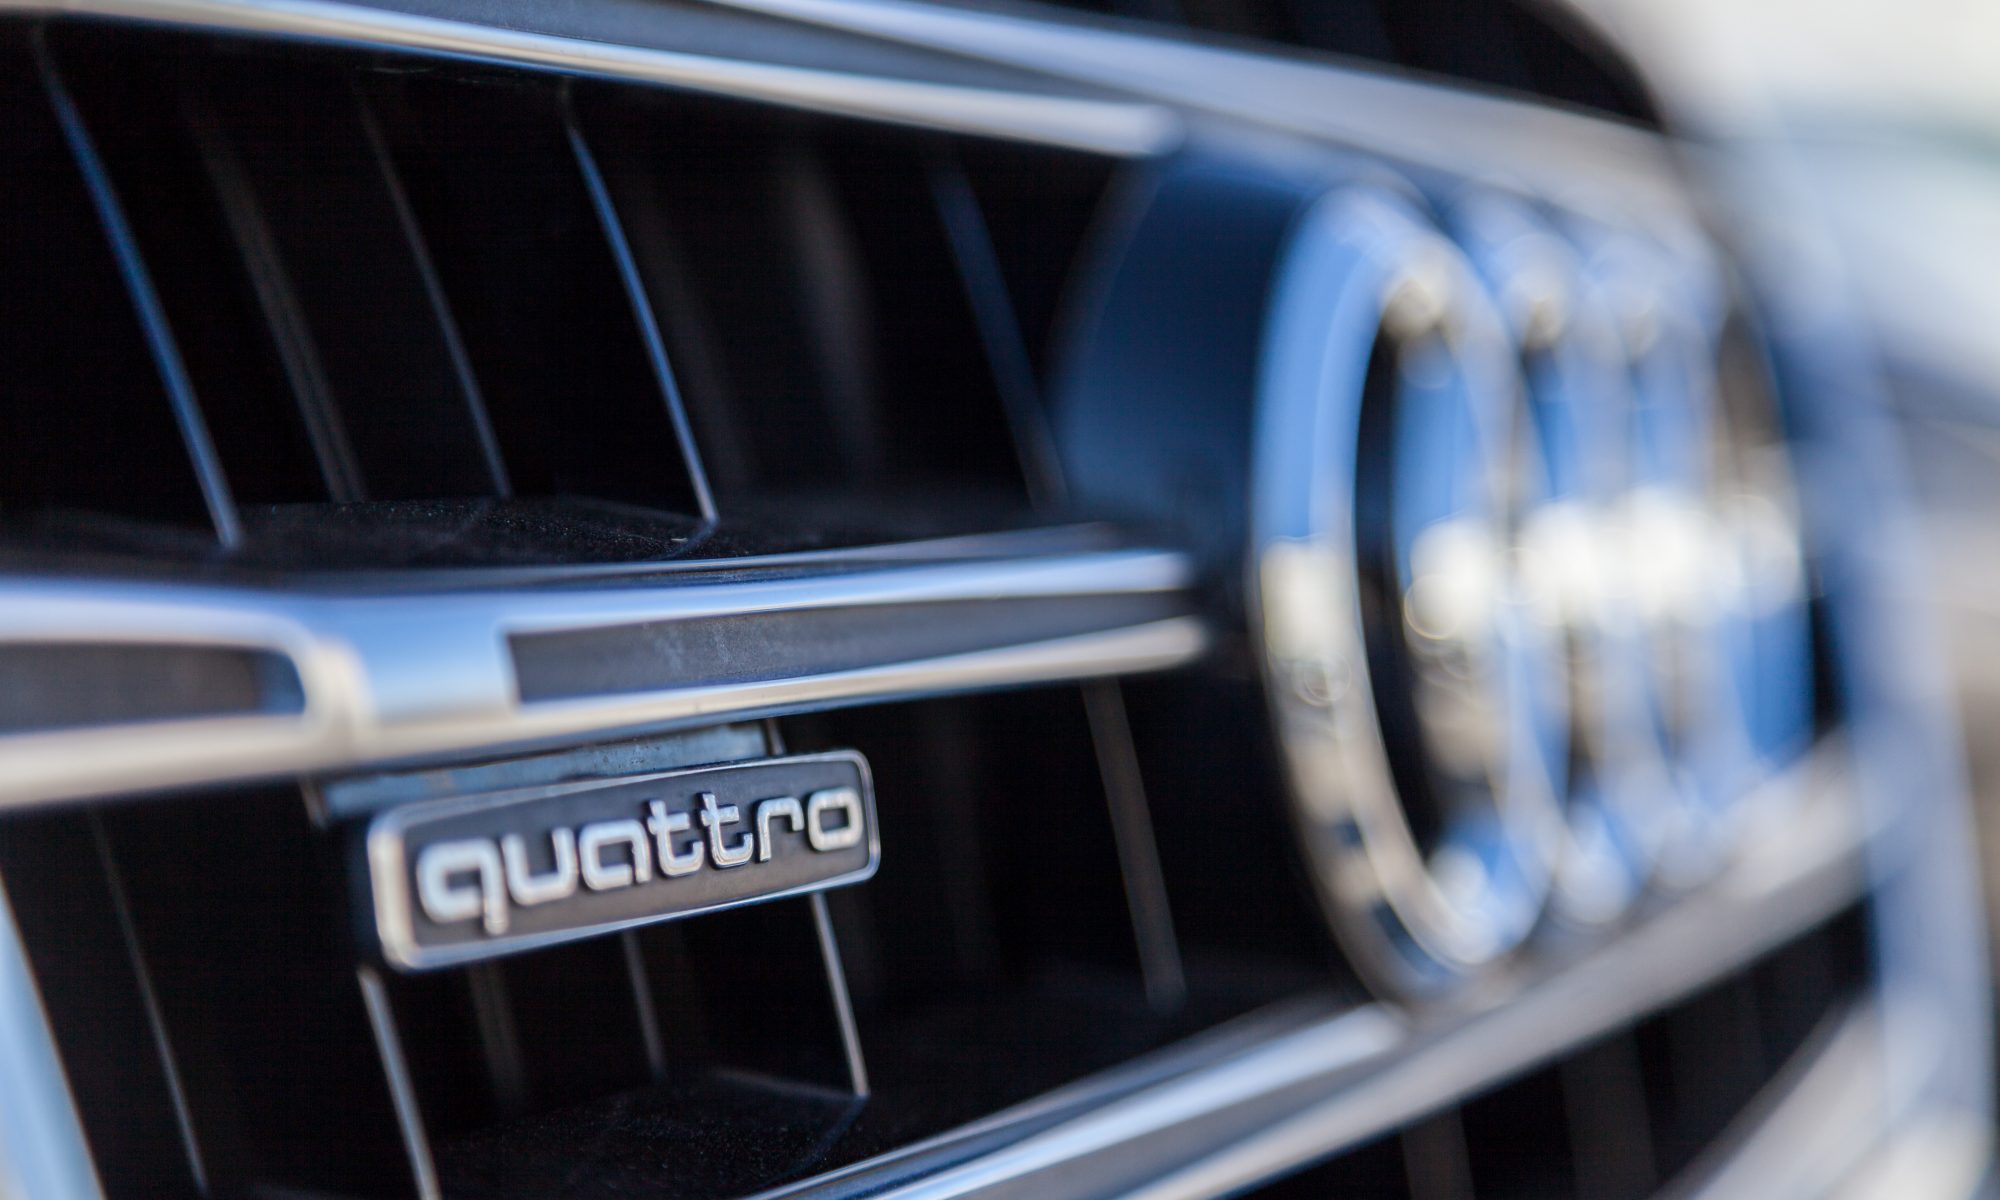 The Audi Buyer - Buyer or Audi quattro